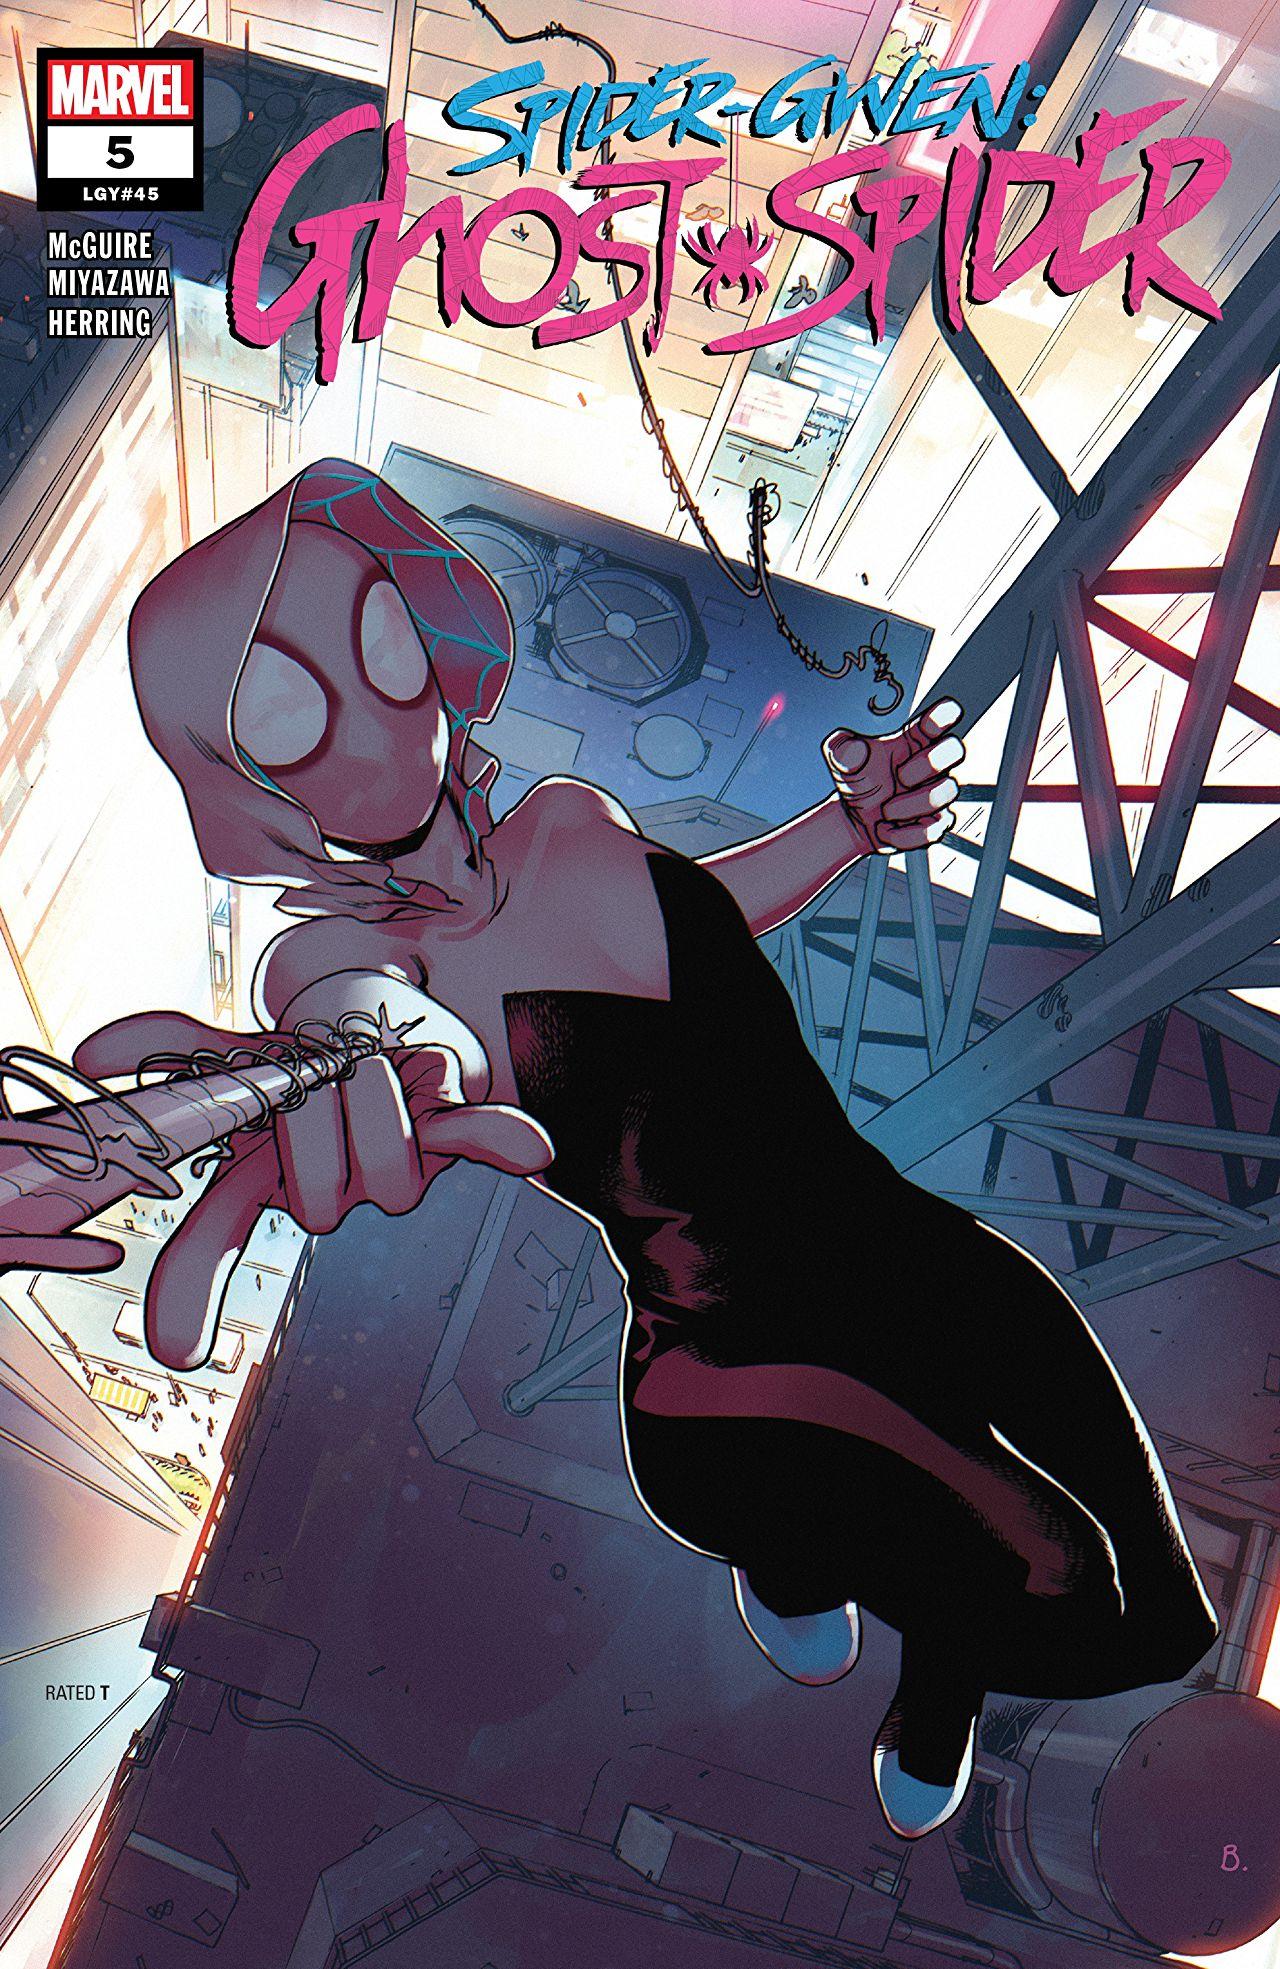 Spider-Gwen: Ghost-Spider Vol. 1 #5